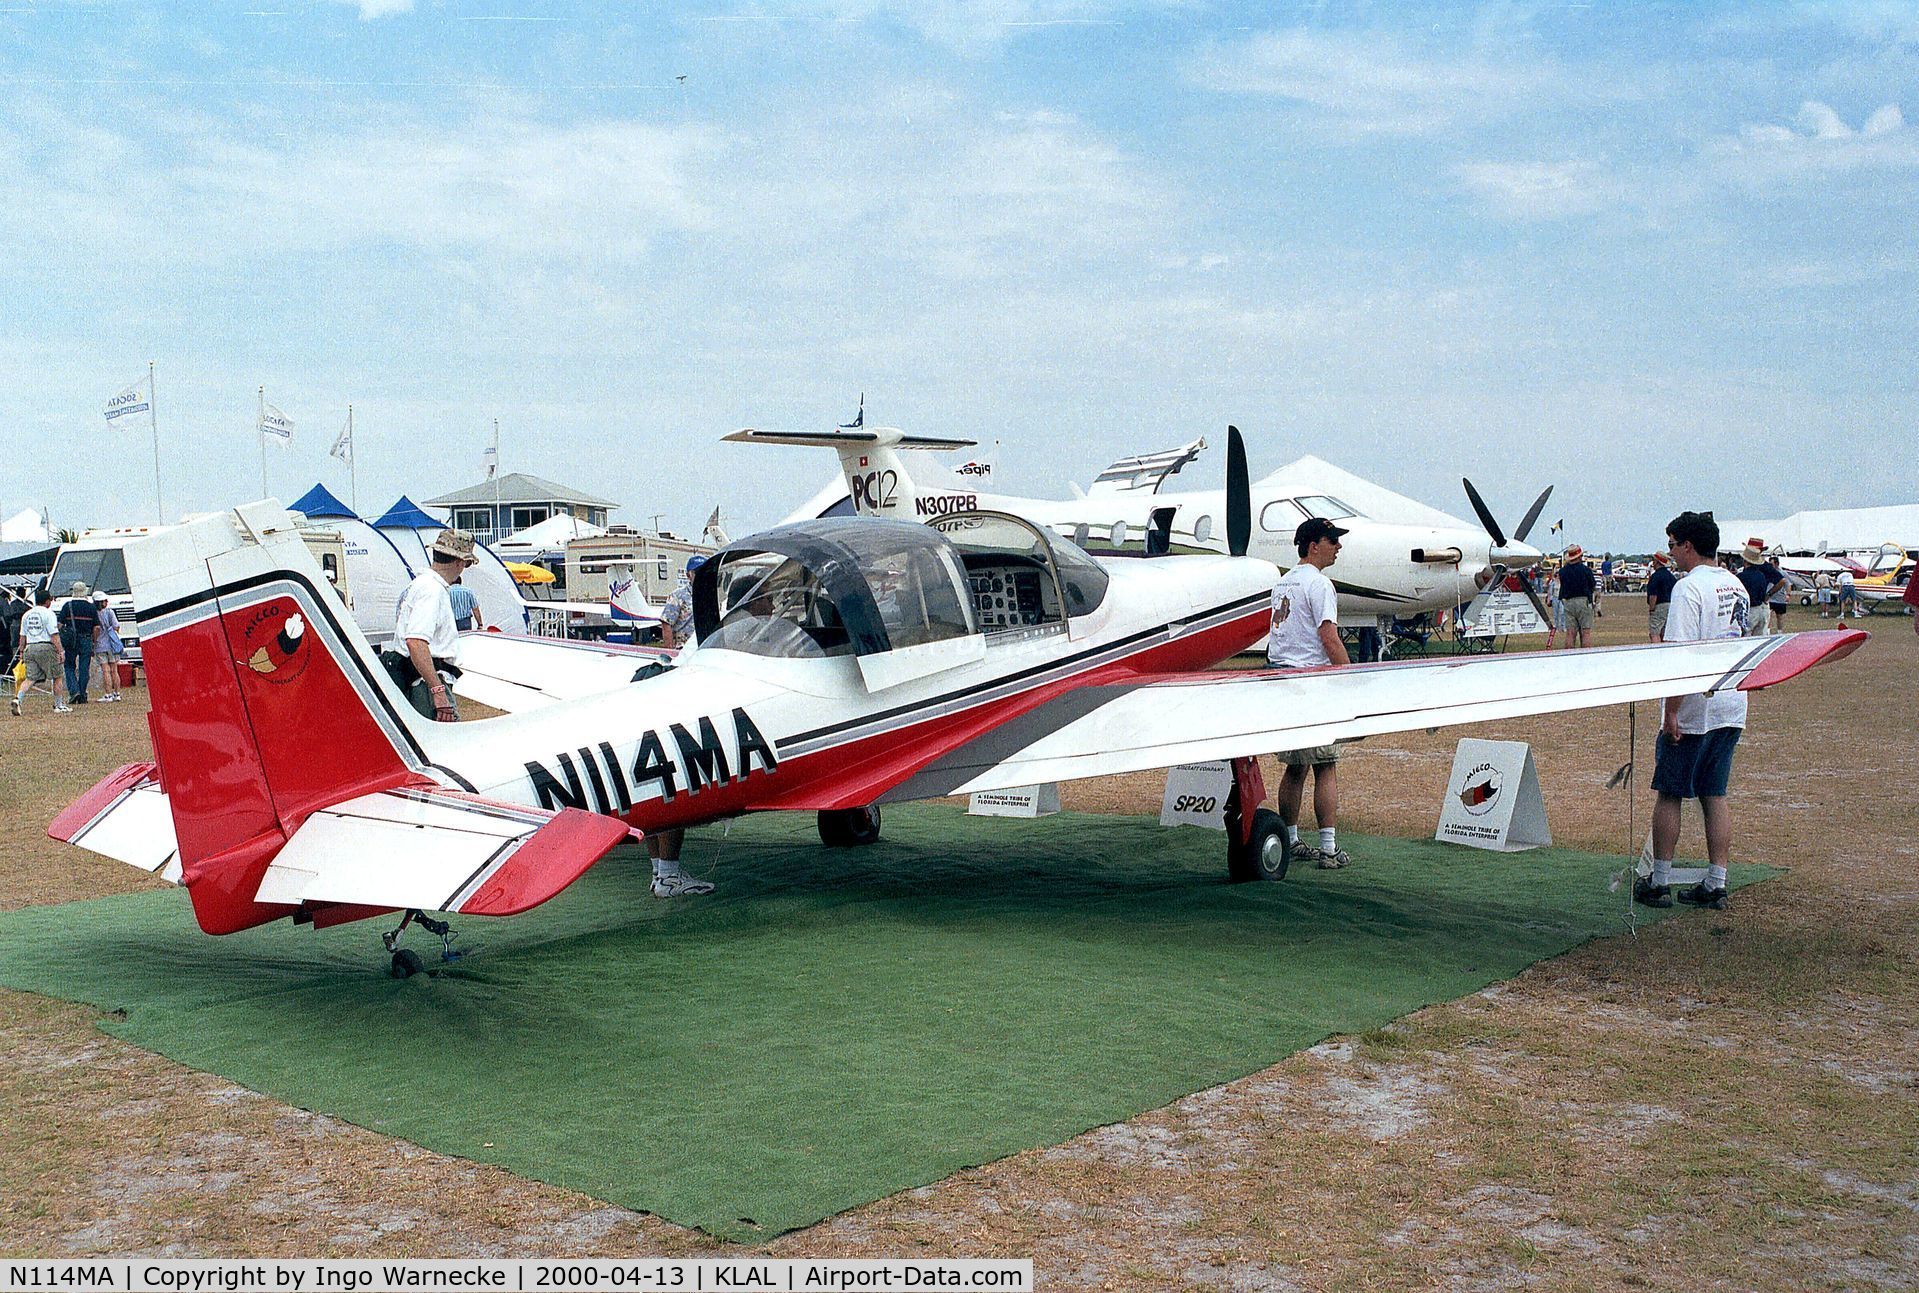 N114MA, 2000 Micco MAC-145A C/N 305, Micco MAC-145A at 2000 Sun 'n Fun, Lakeland FL